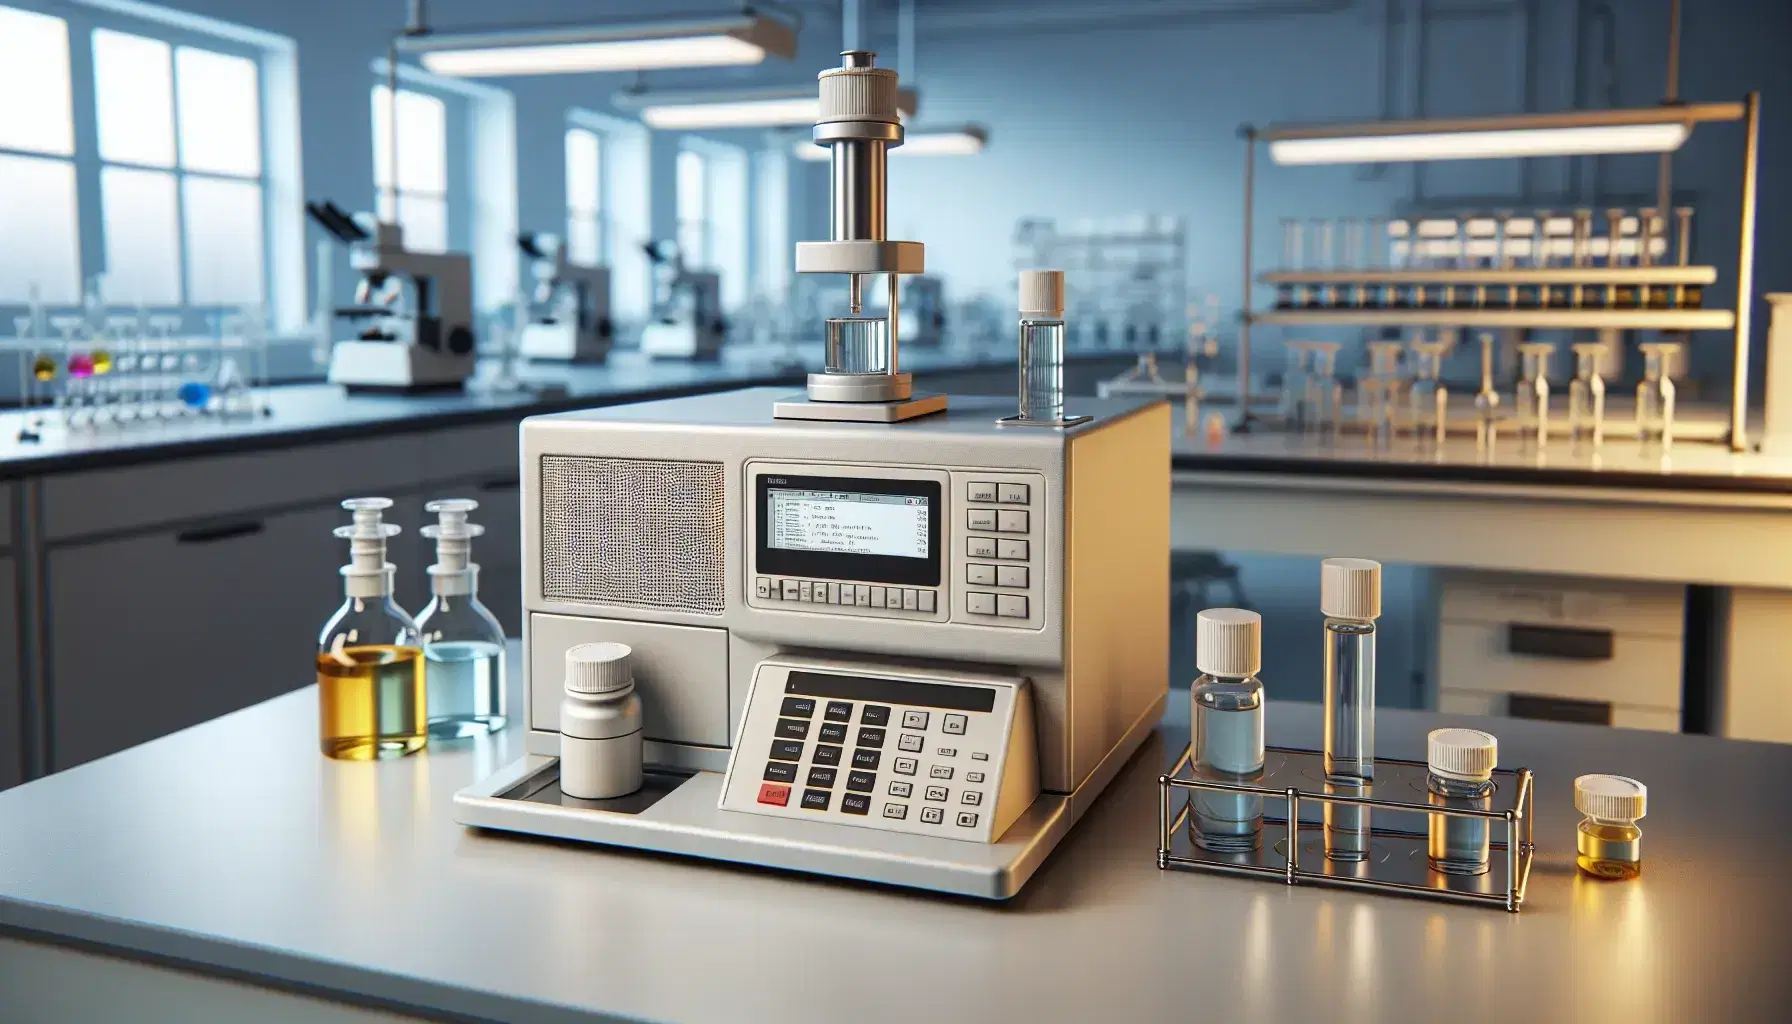 Espectrómetro infrarrojo de mesa en laboratorio científico con muestra en soporte metálico y frascos de líquidos coloridos al fondo.